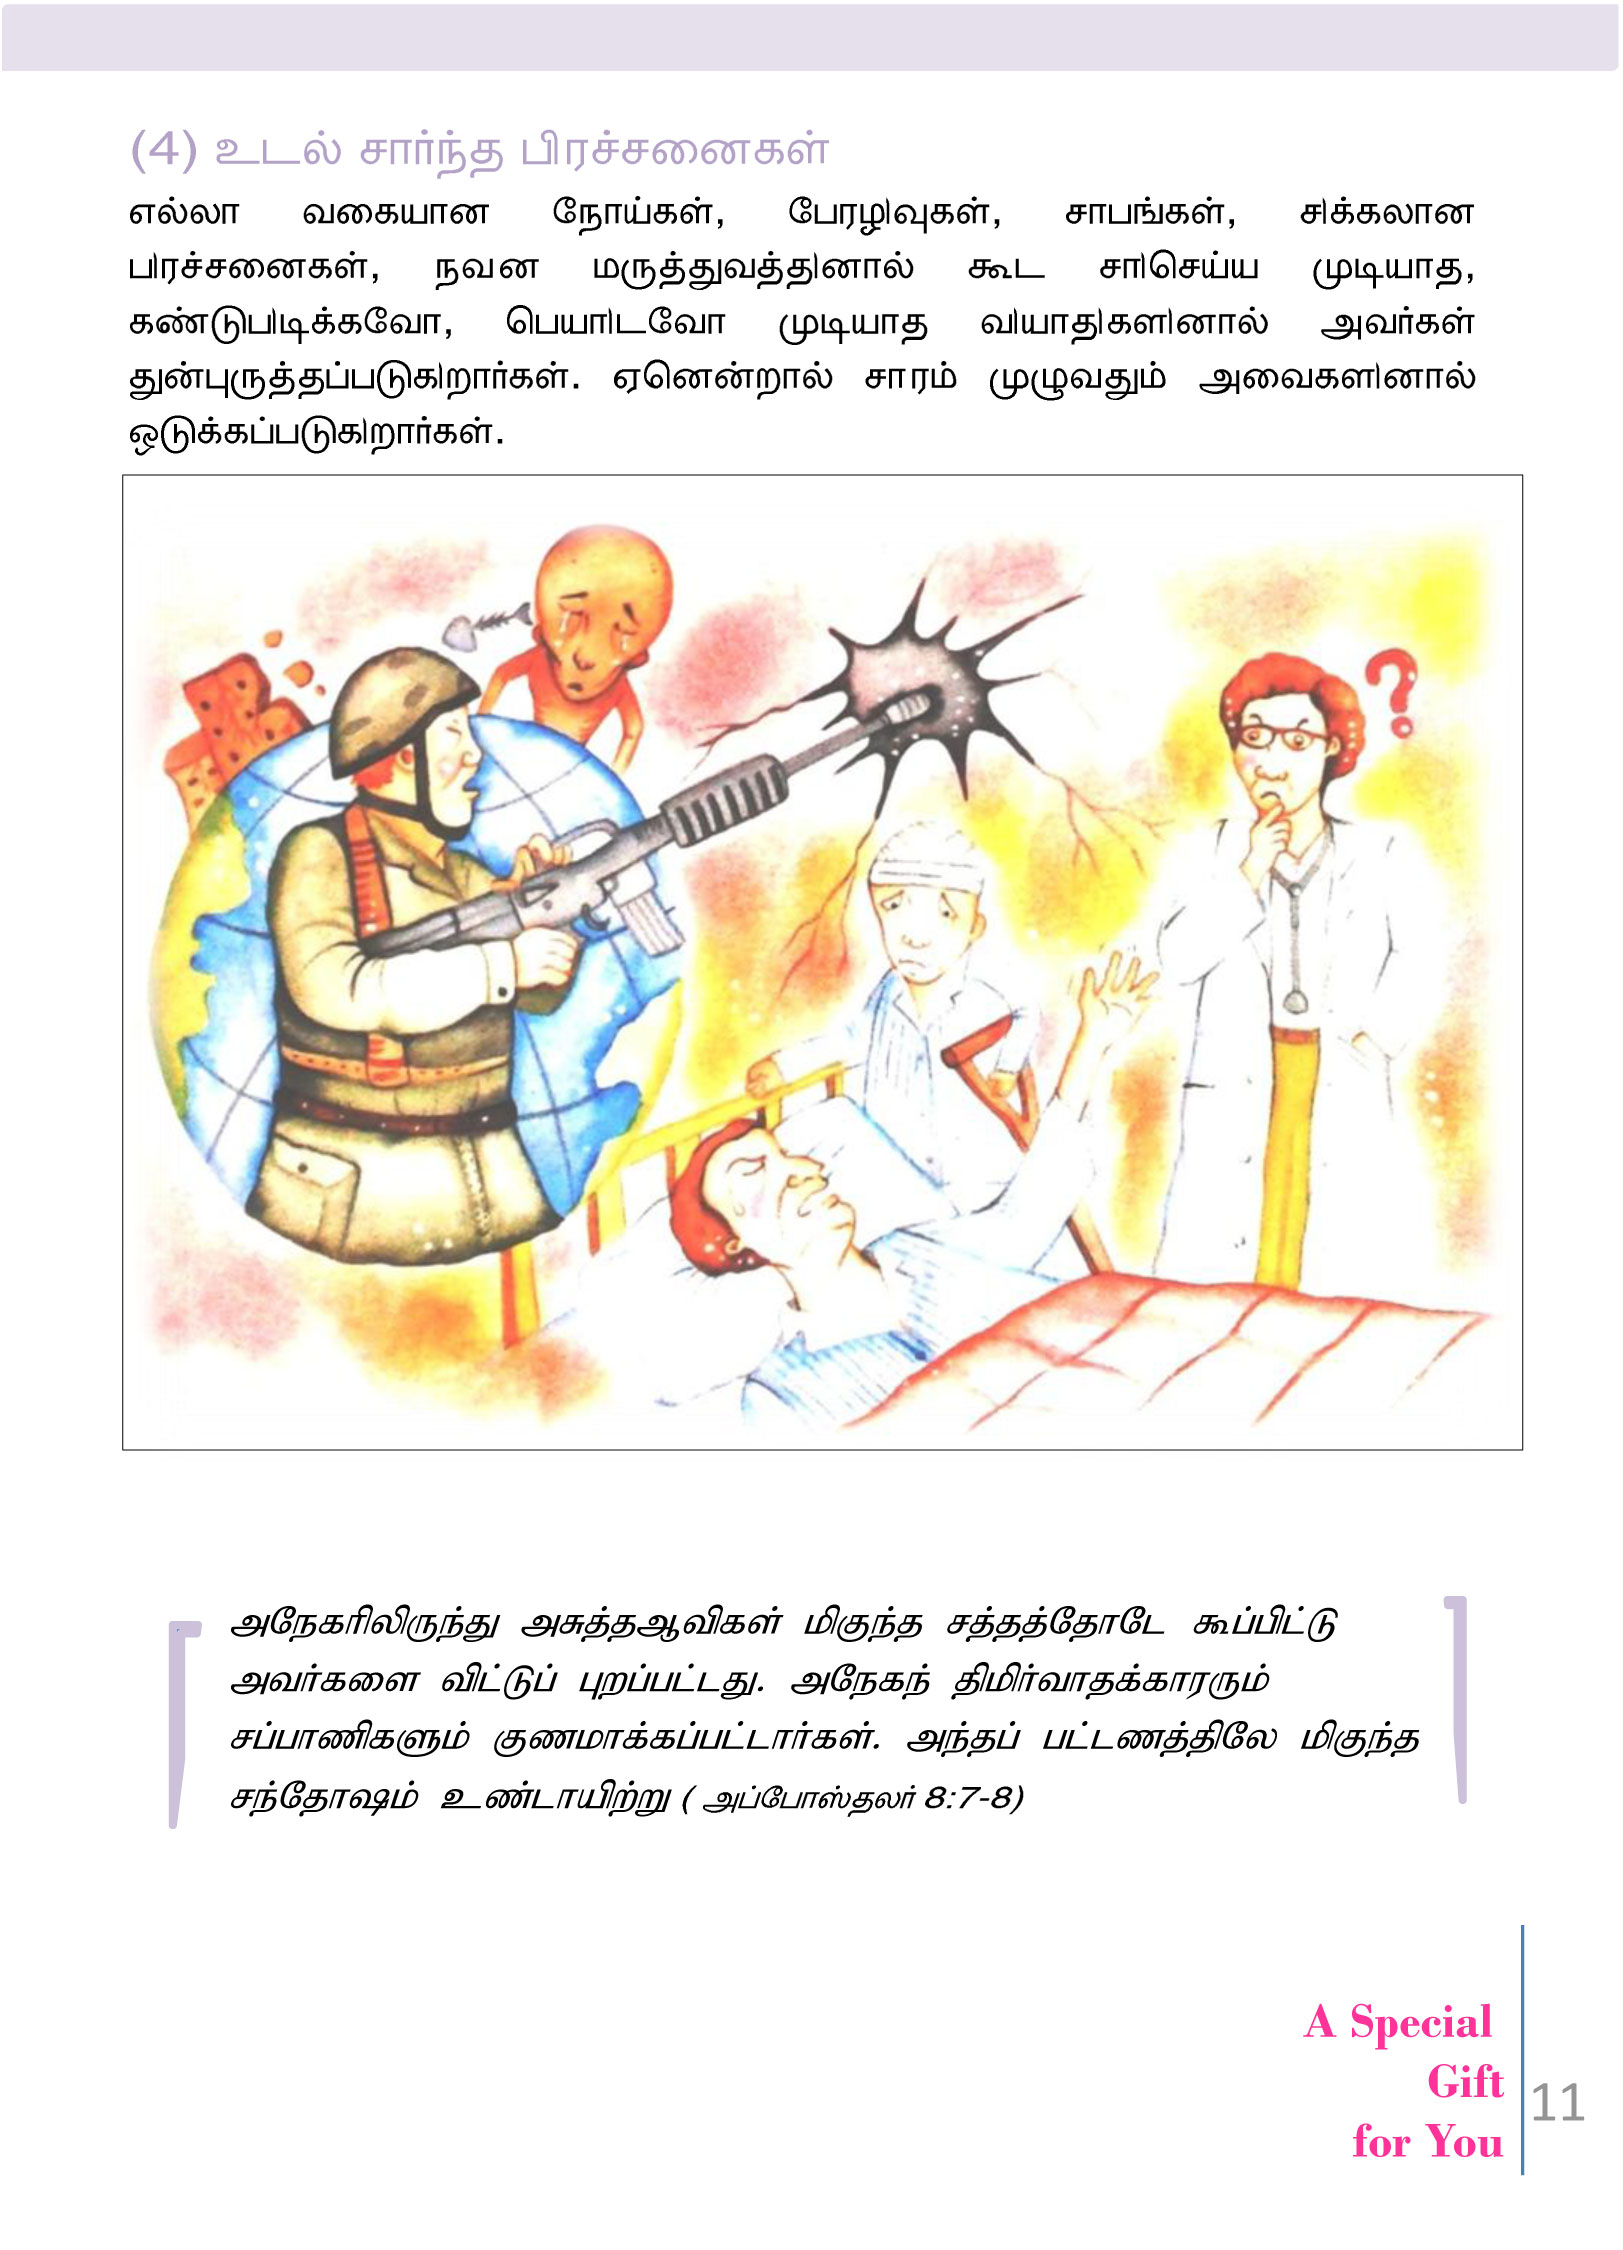 Tamil-Evangelism-Book-Pdf-3-11.jpg